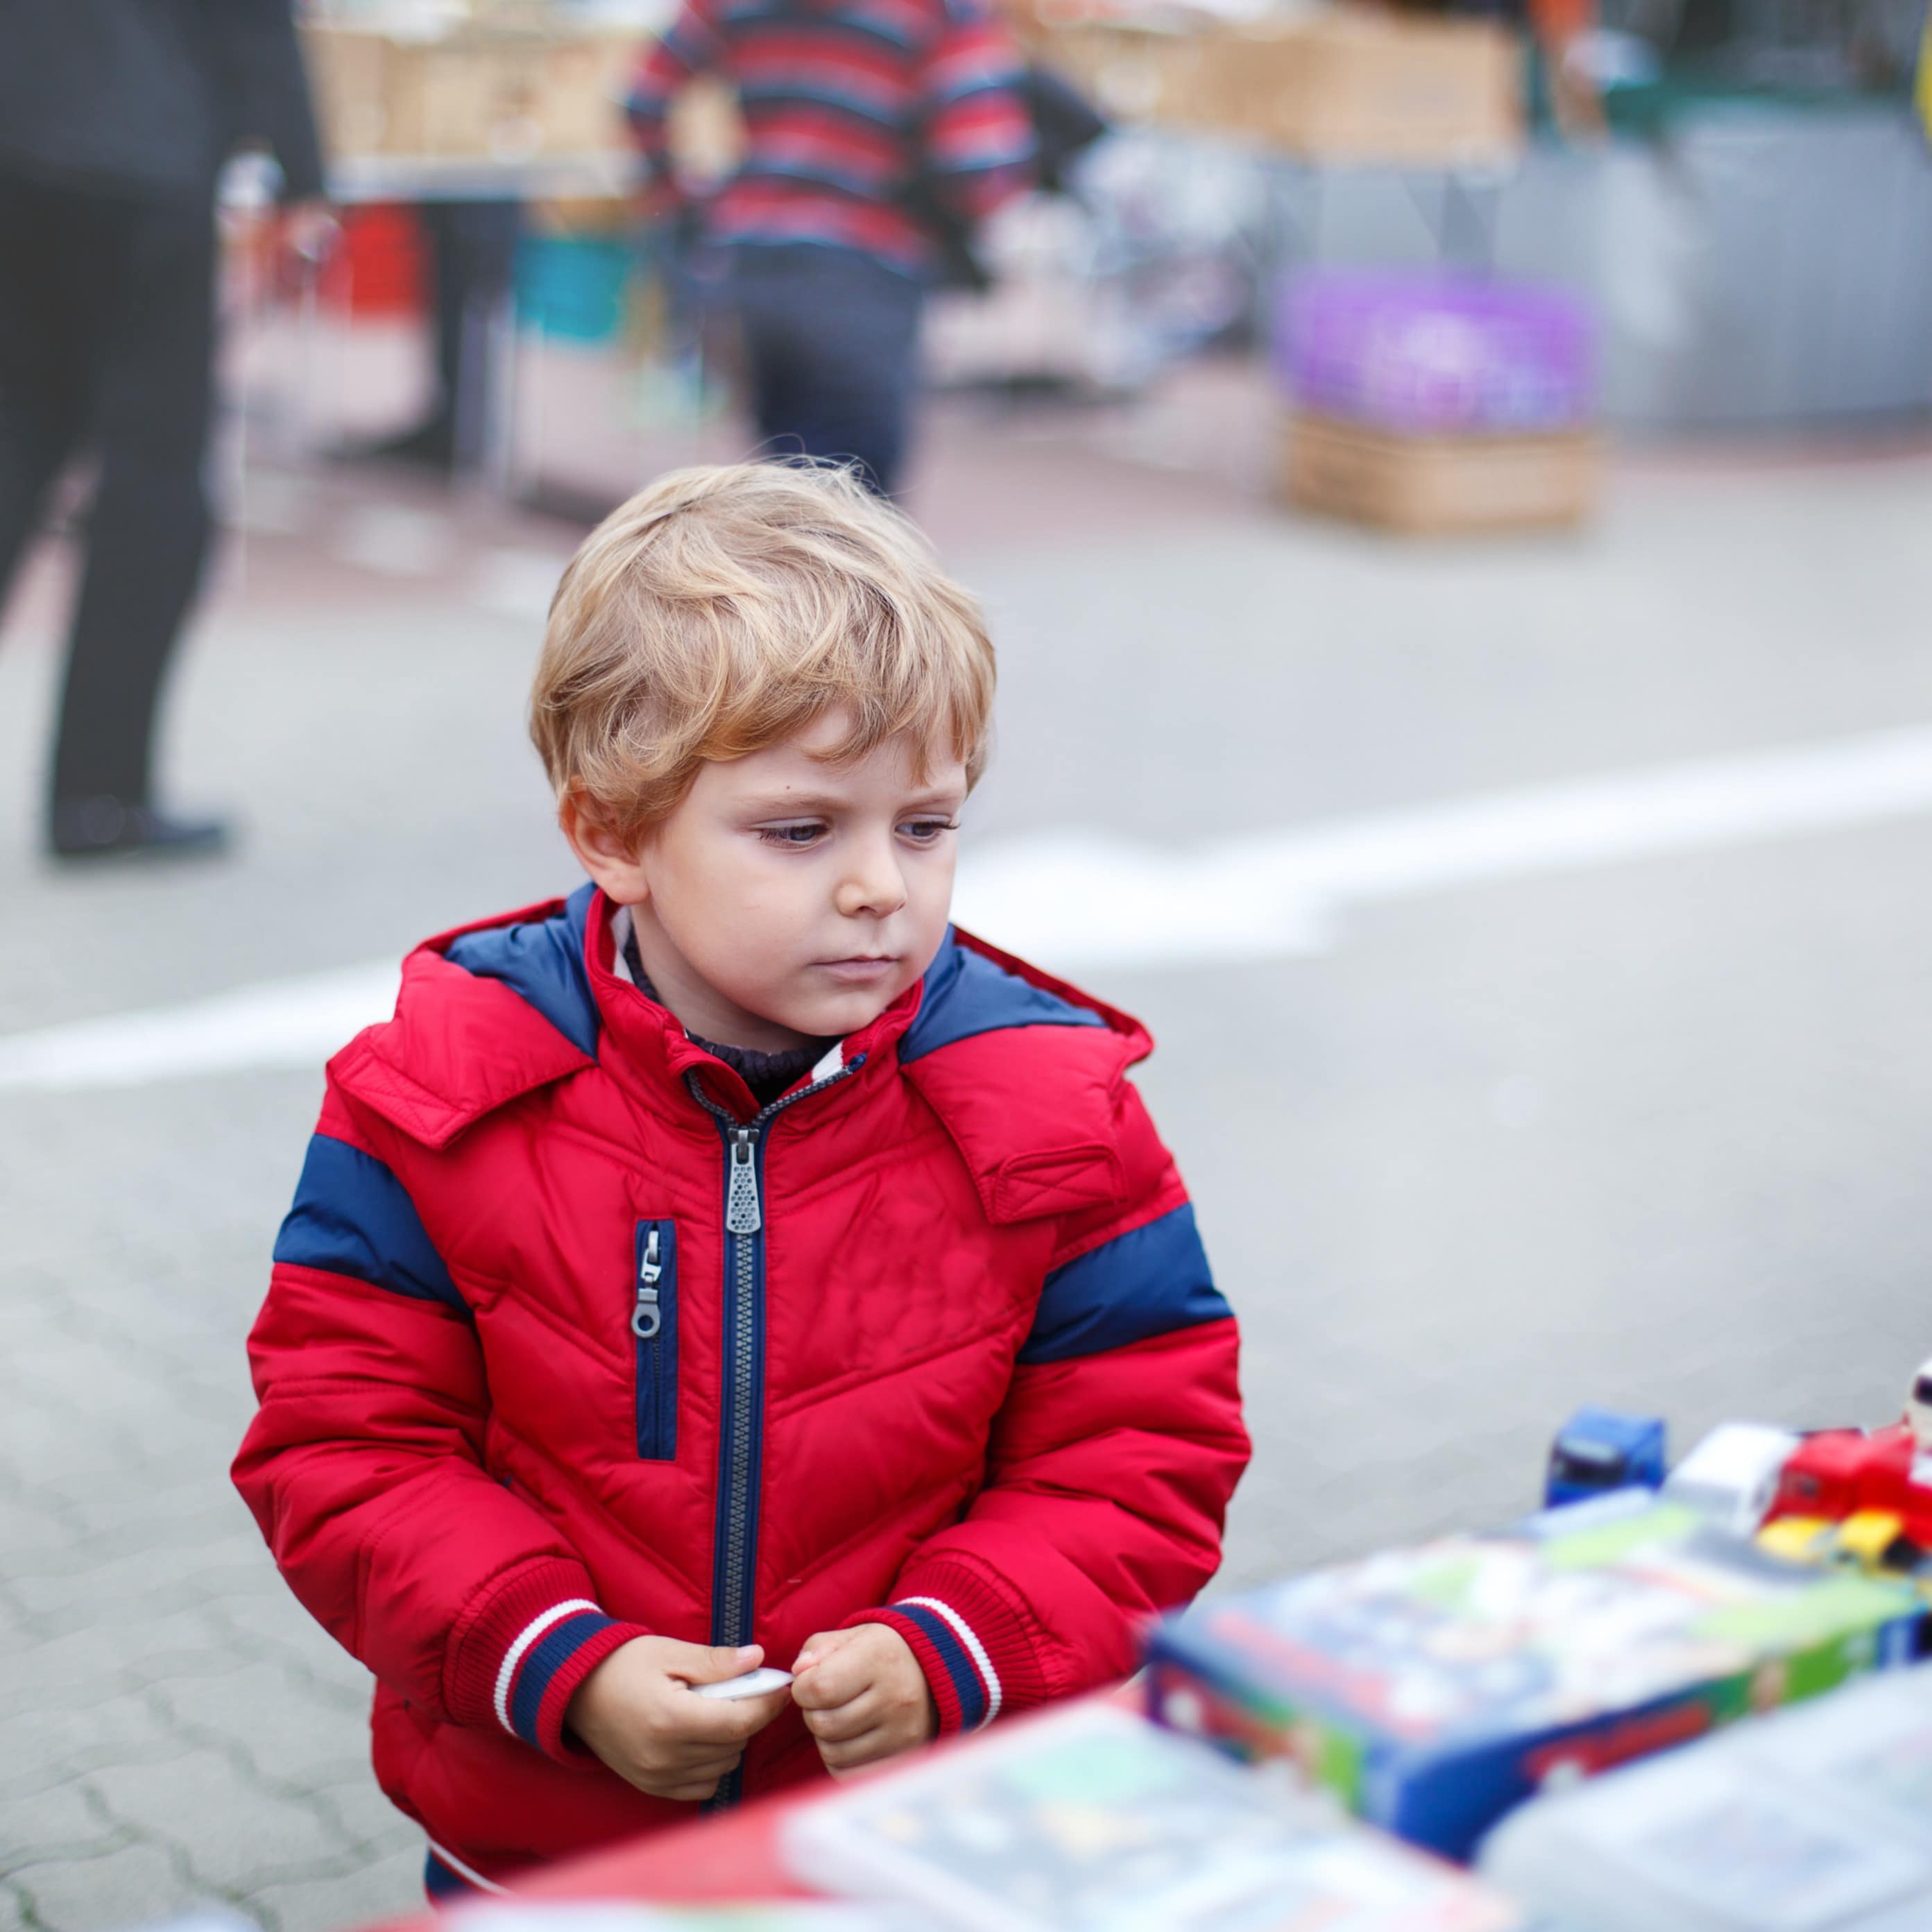 Kleiner blonder Junge mit roter Jacke betrachtet Spielzeug an einem Flohmarktstand.